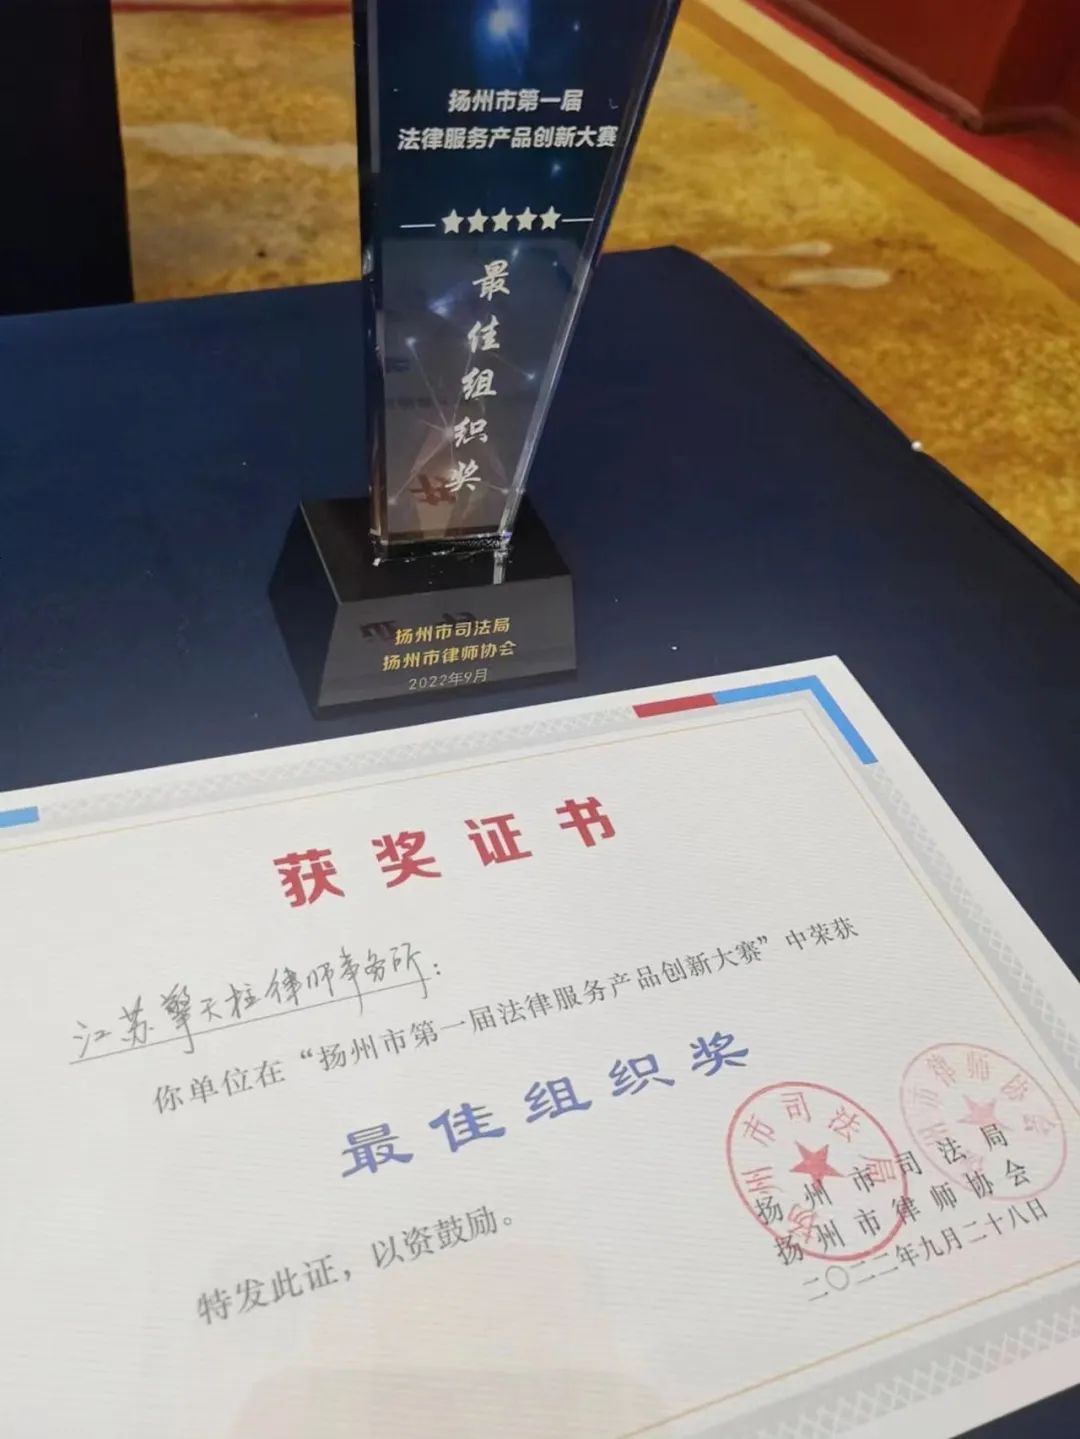 喜报 | 祝贺擎天柱律所在扬州市第一届法律服务产品创新大赛中荣获佳绩(图2)